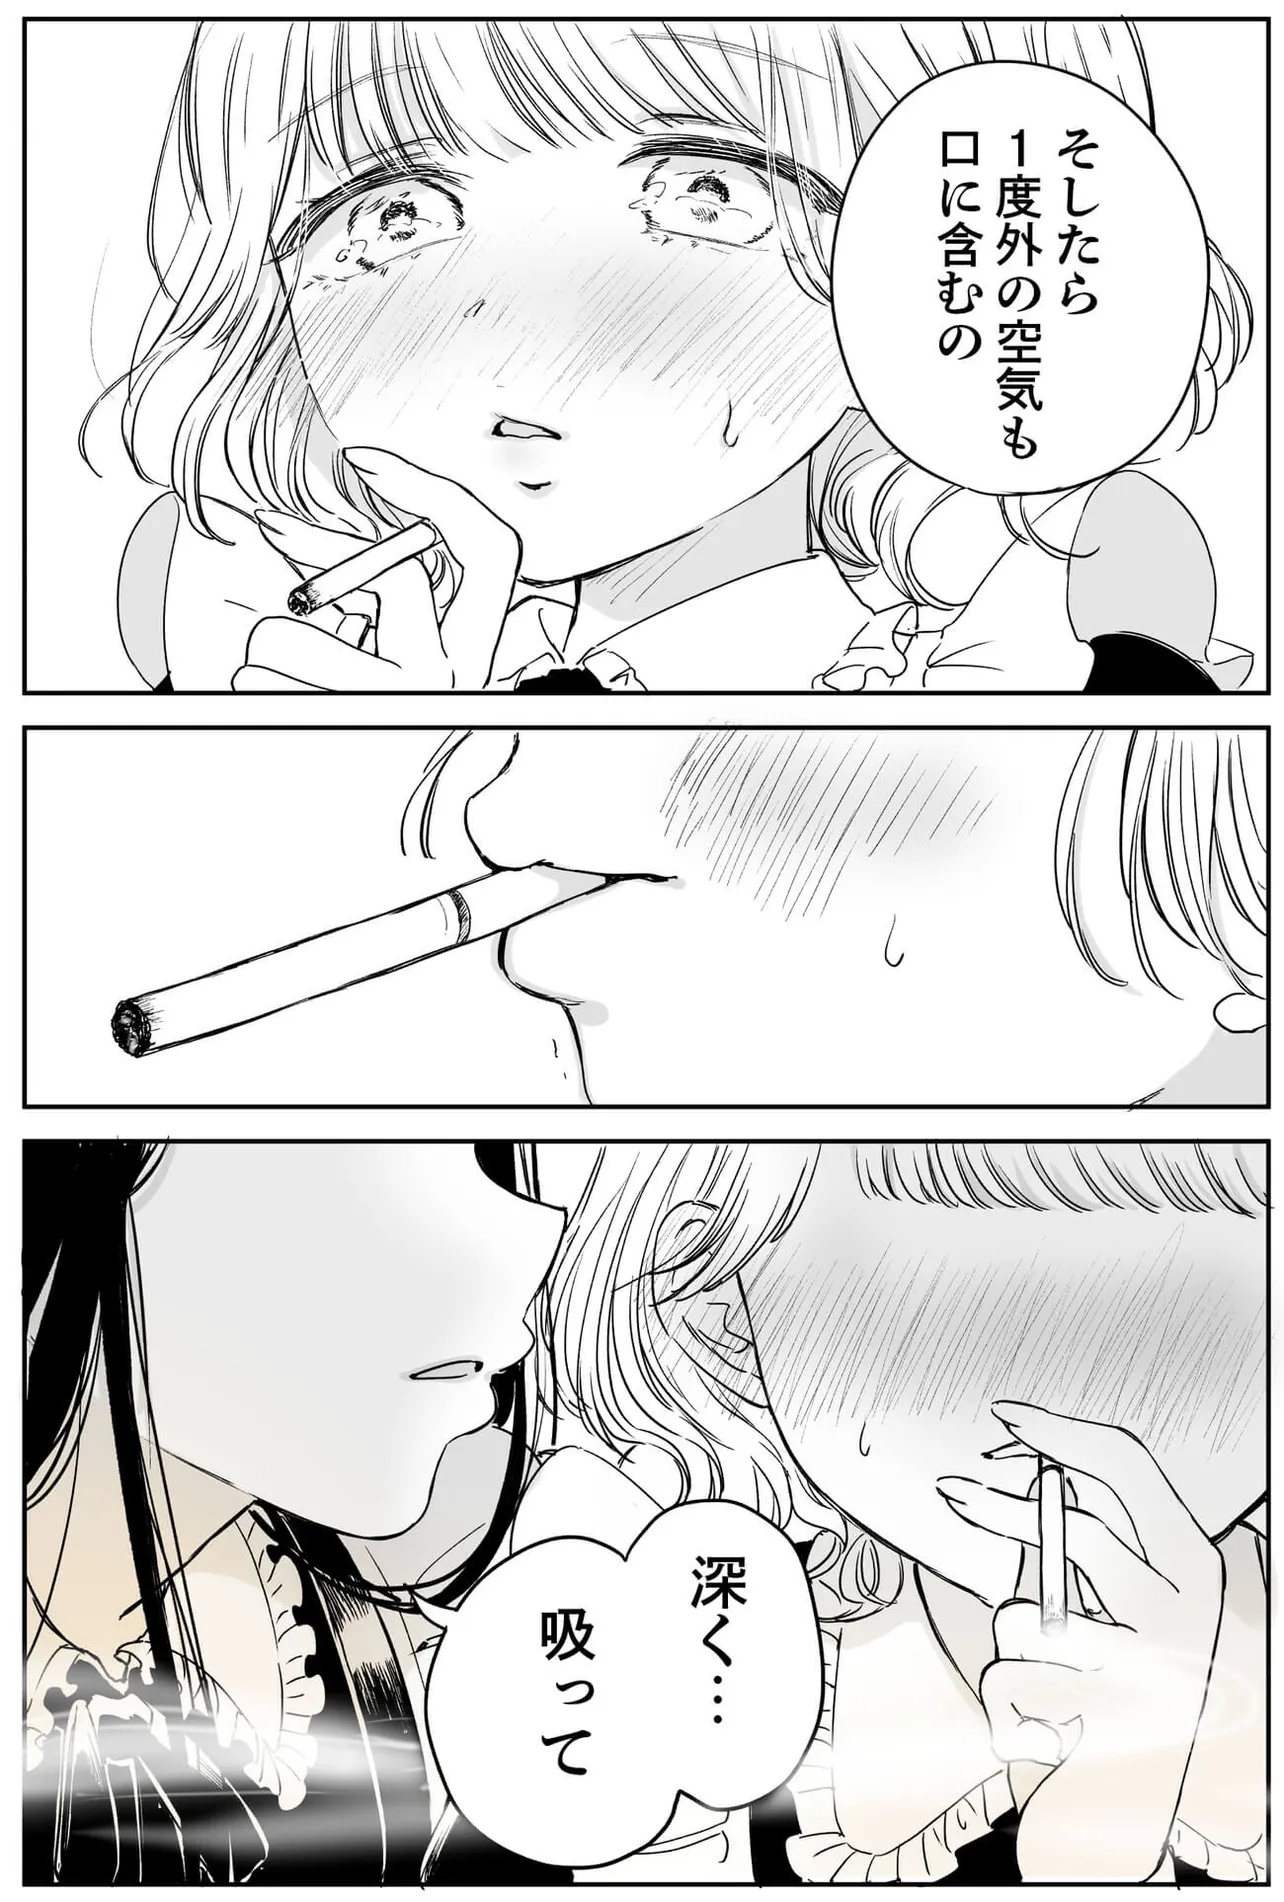 タバコ初心者のメイドさんが、先輩に吸い方を教わる漫画 (6／11)